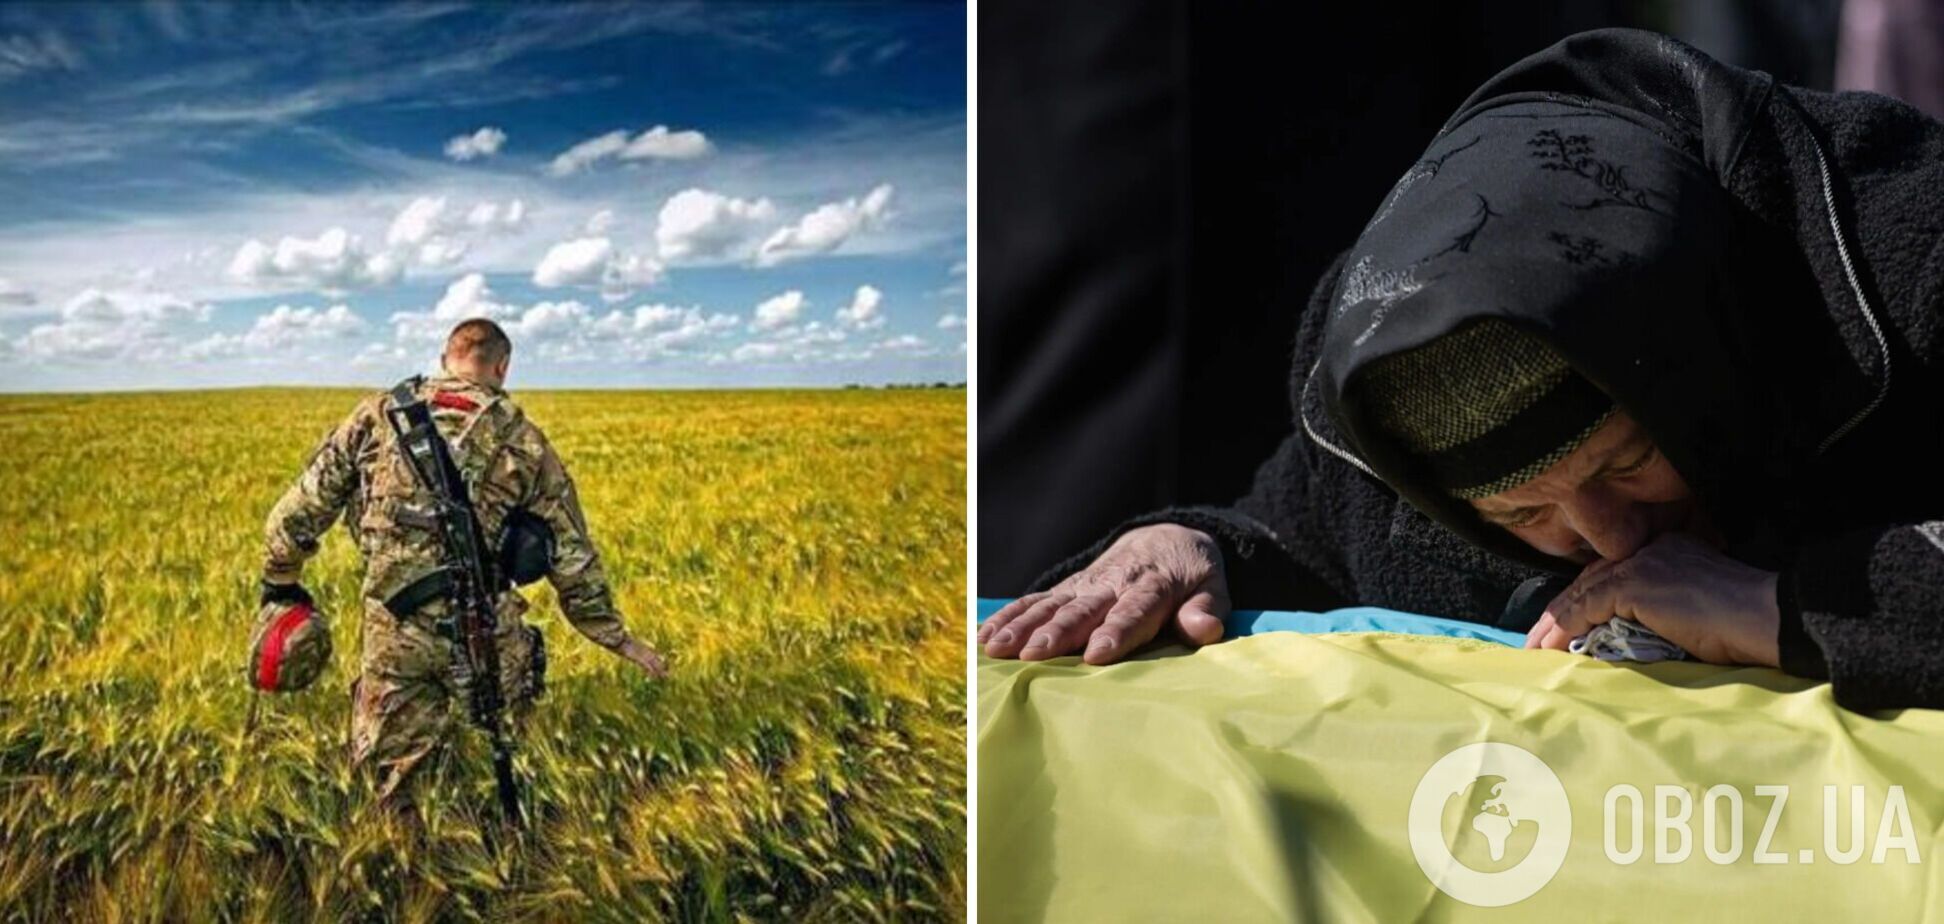 'Разрывает сердце': сеть потрясло фото матери, которая бежала навстречу убитому сыну-защитнику Украины